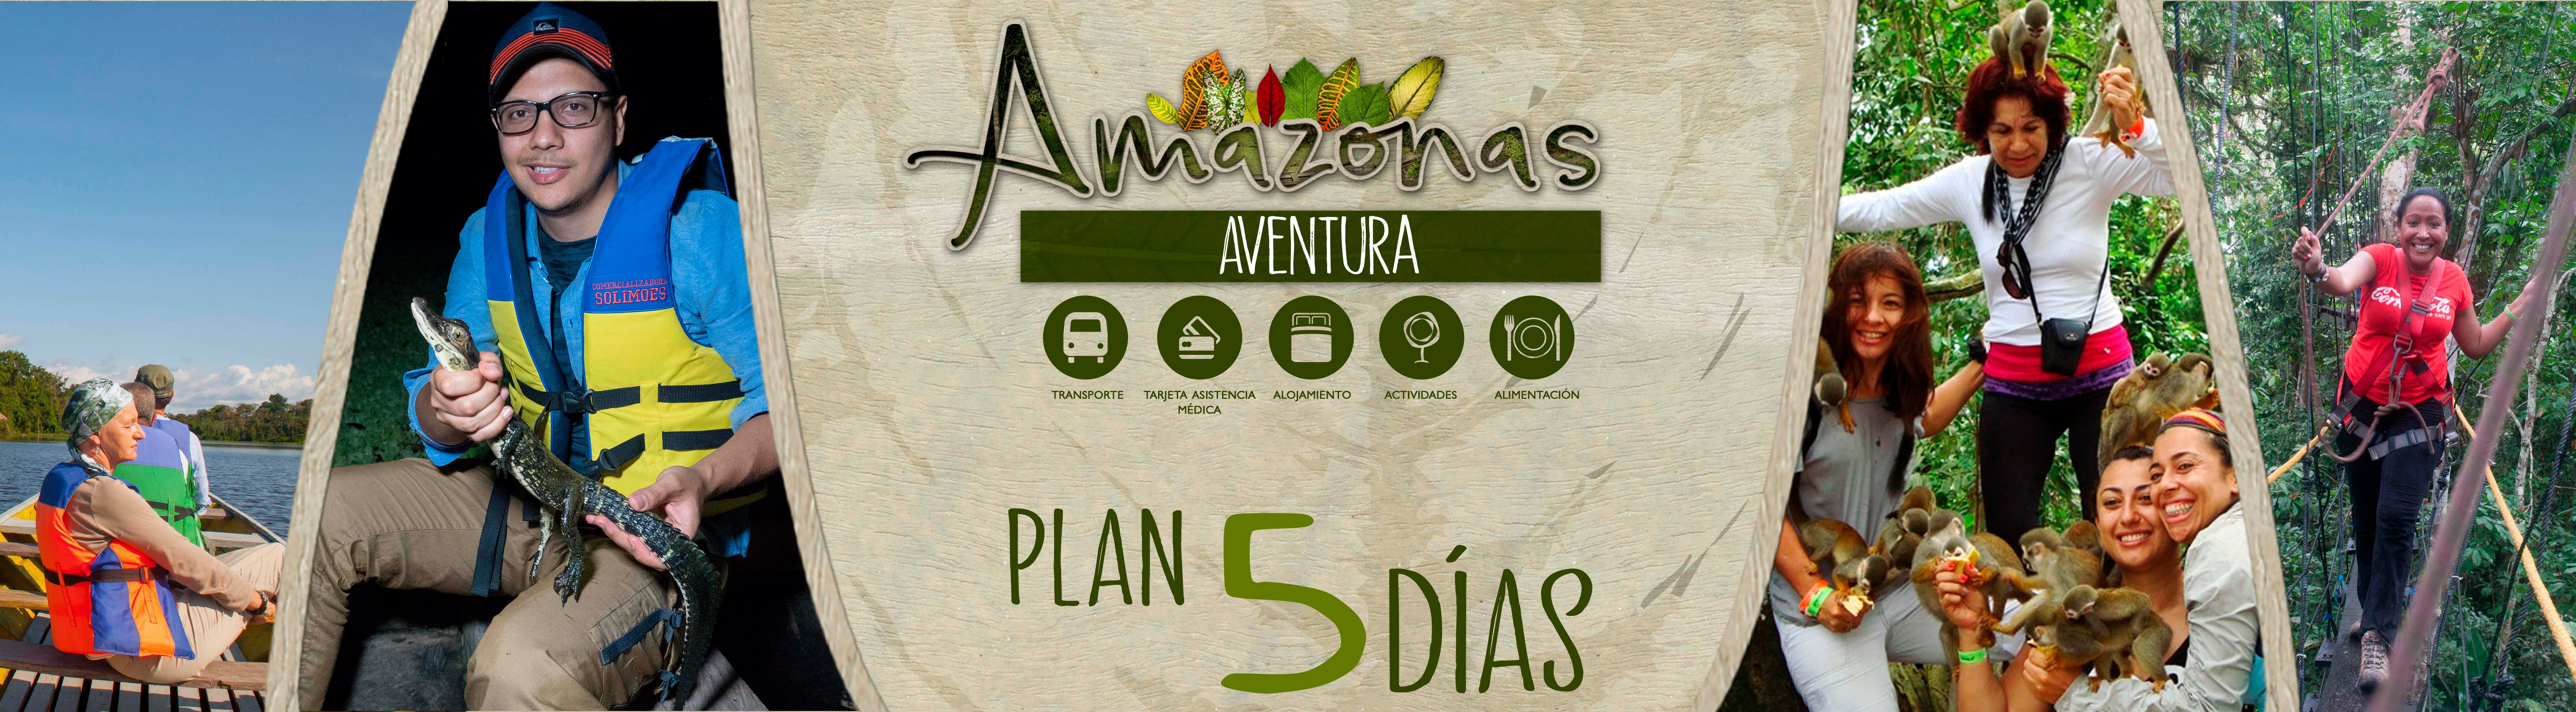 Amazonas-aventura-5-DIAS